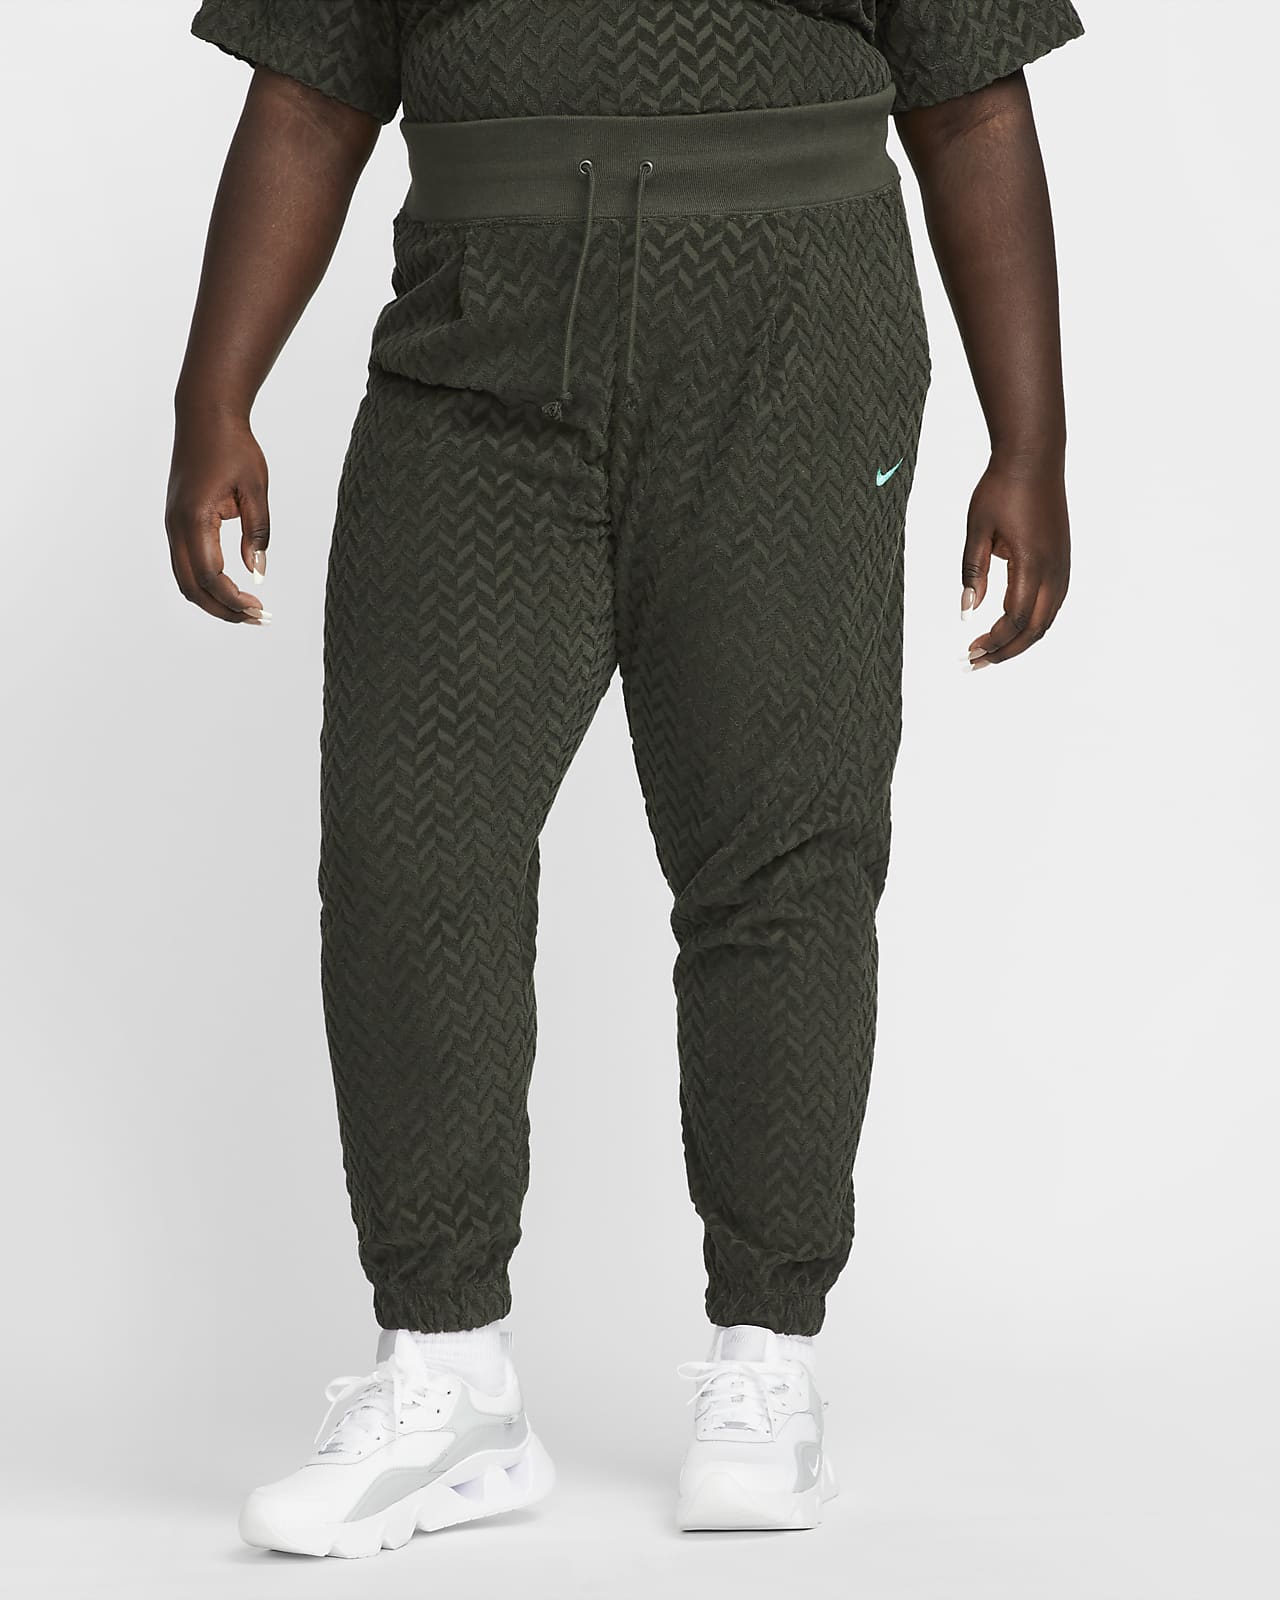 Nike Sportswear Everyday Modern Damen-Jogger mit hohem Taillenbund und durchgehendem Jacquard-Muster (große Größe)